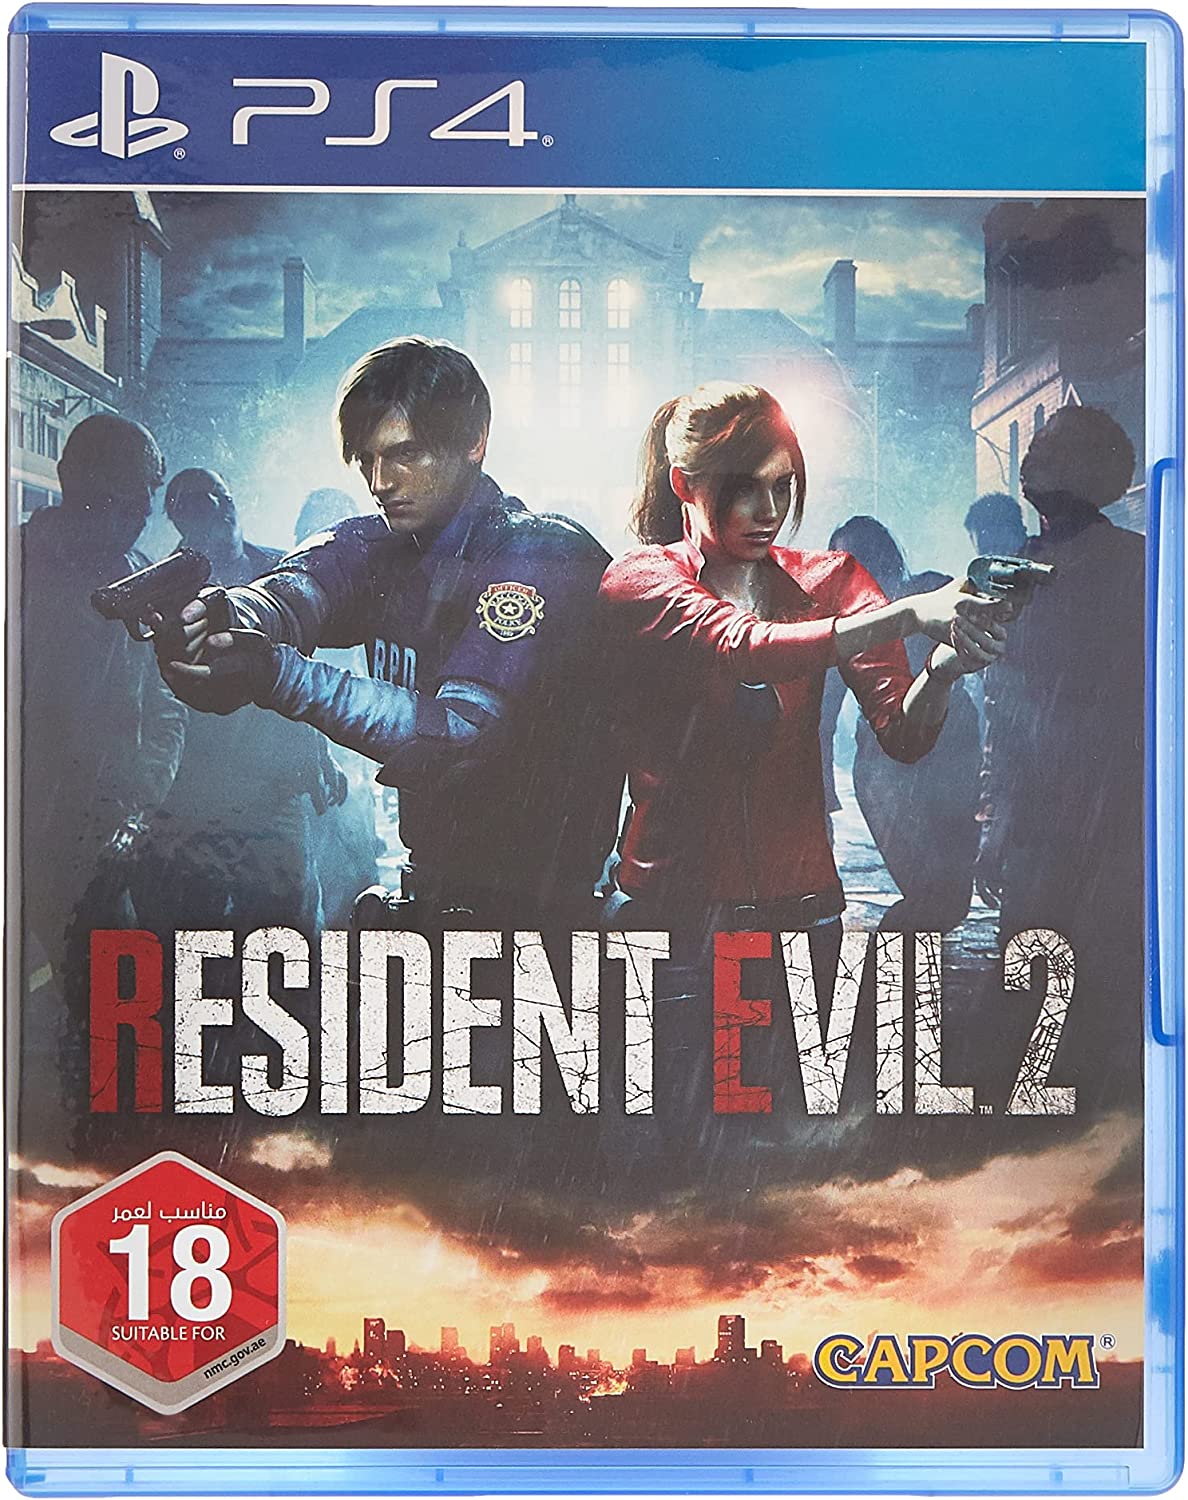 Capcom Resident Evil 2 Remake Standard Edition for PlayStation 4